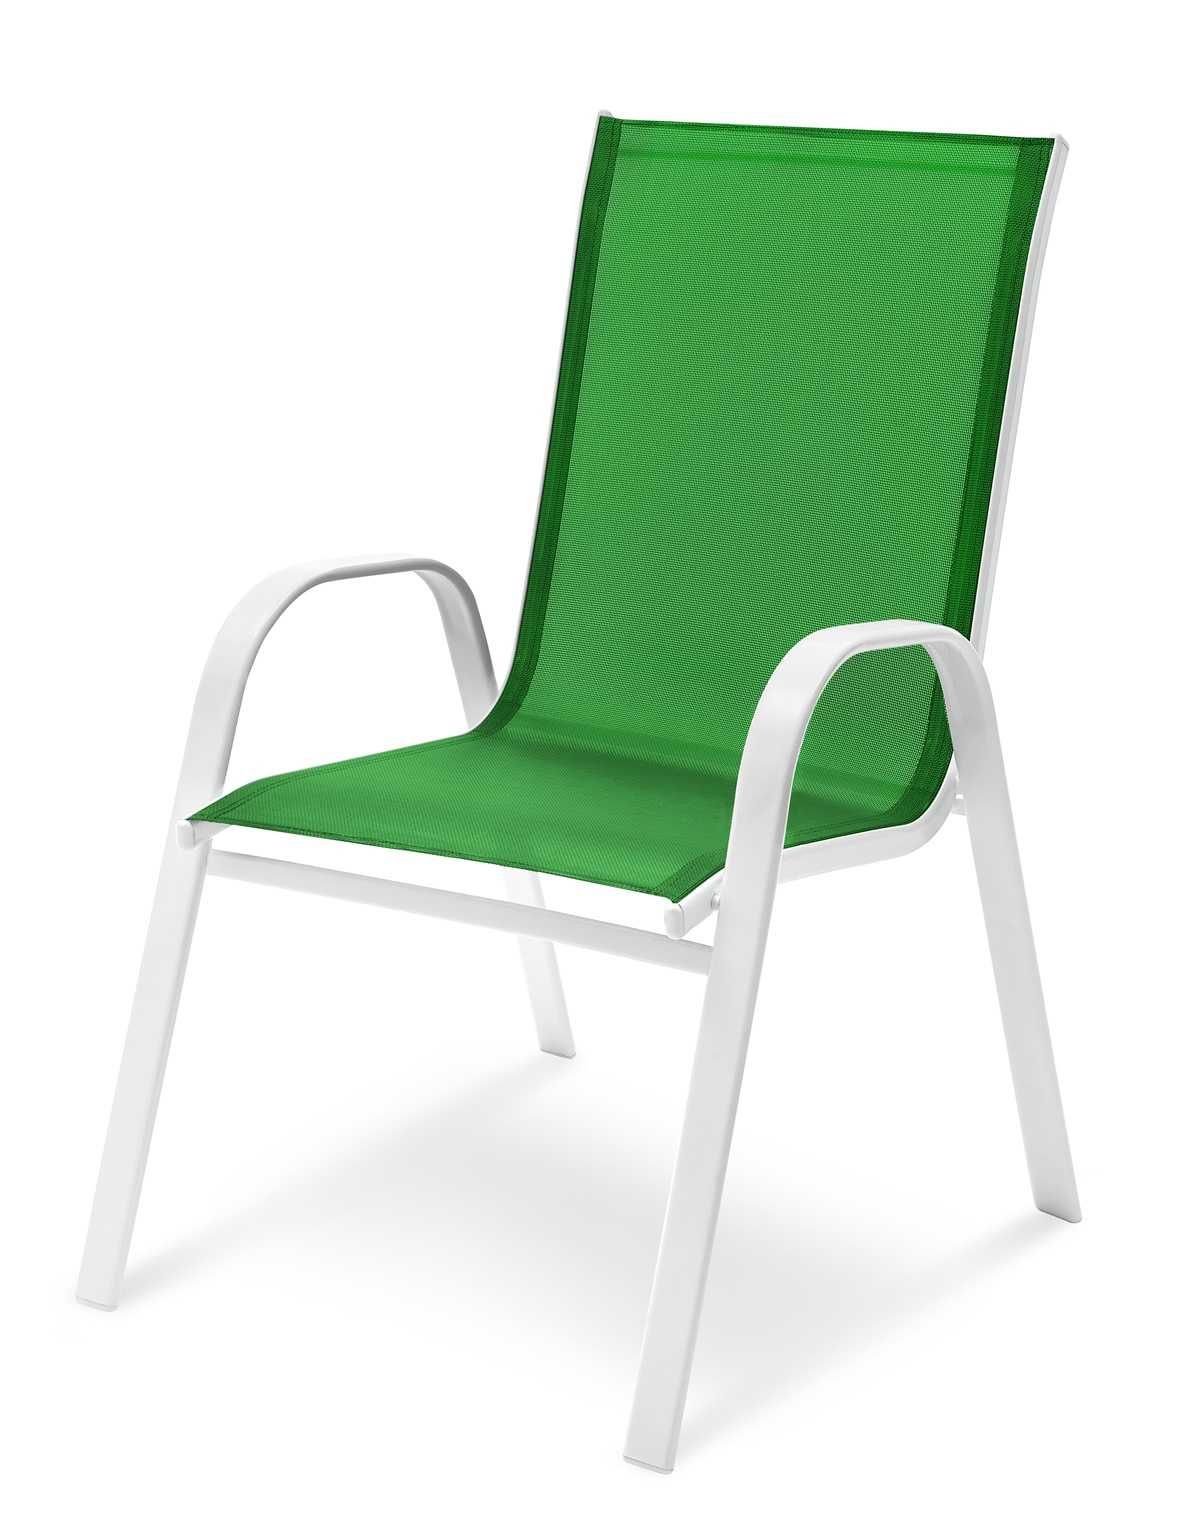 KRZESŁO OGRODOWE Na Taras Balkon Ogród Fotel Krzesła Zielone